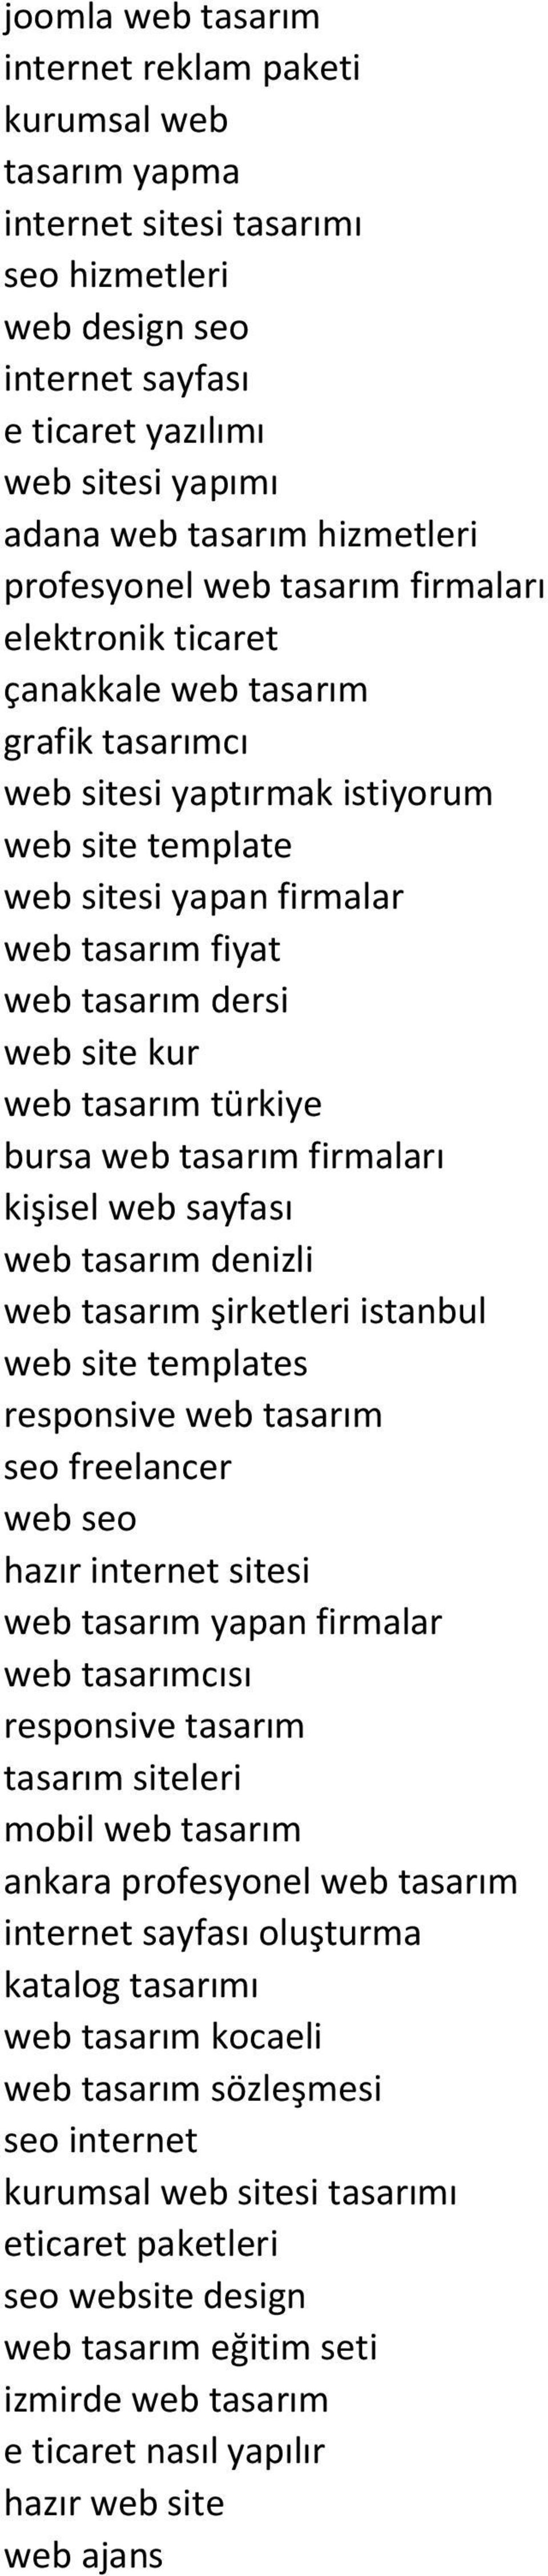 tasarım dersi web site kur web tasarım türkiye bursa web tasarım firmaları kişisel web sayfası web tasarım denizli web tasarım şirketleri istanbul web site templates responsive web tasarım seo